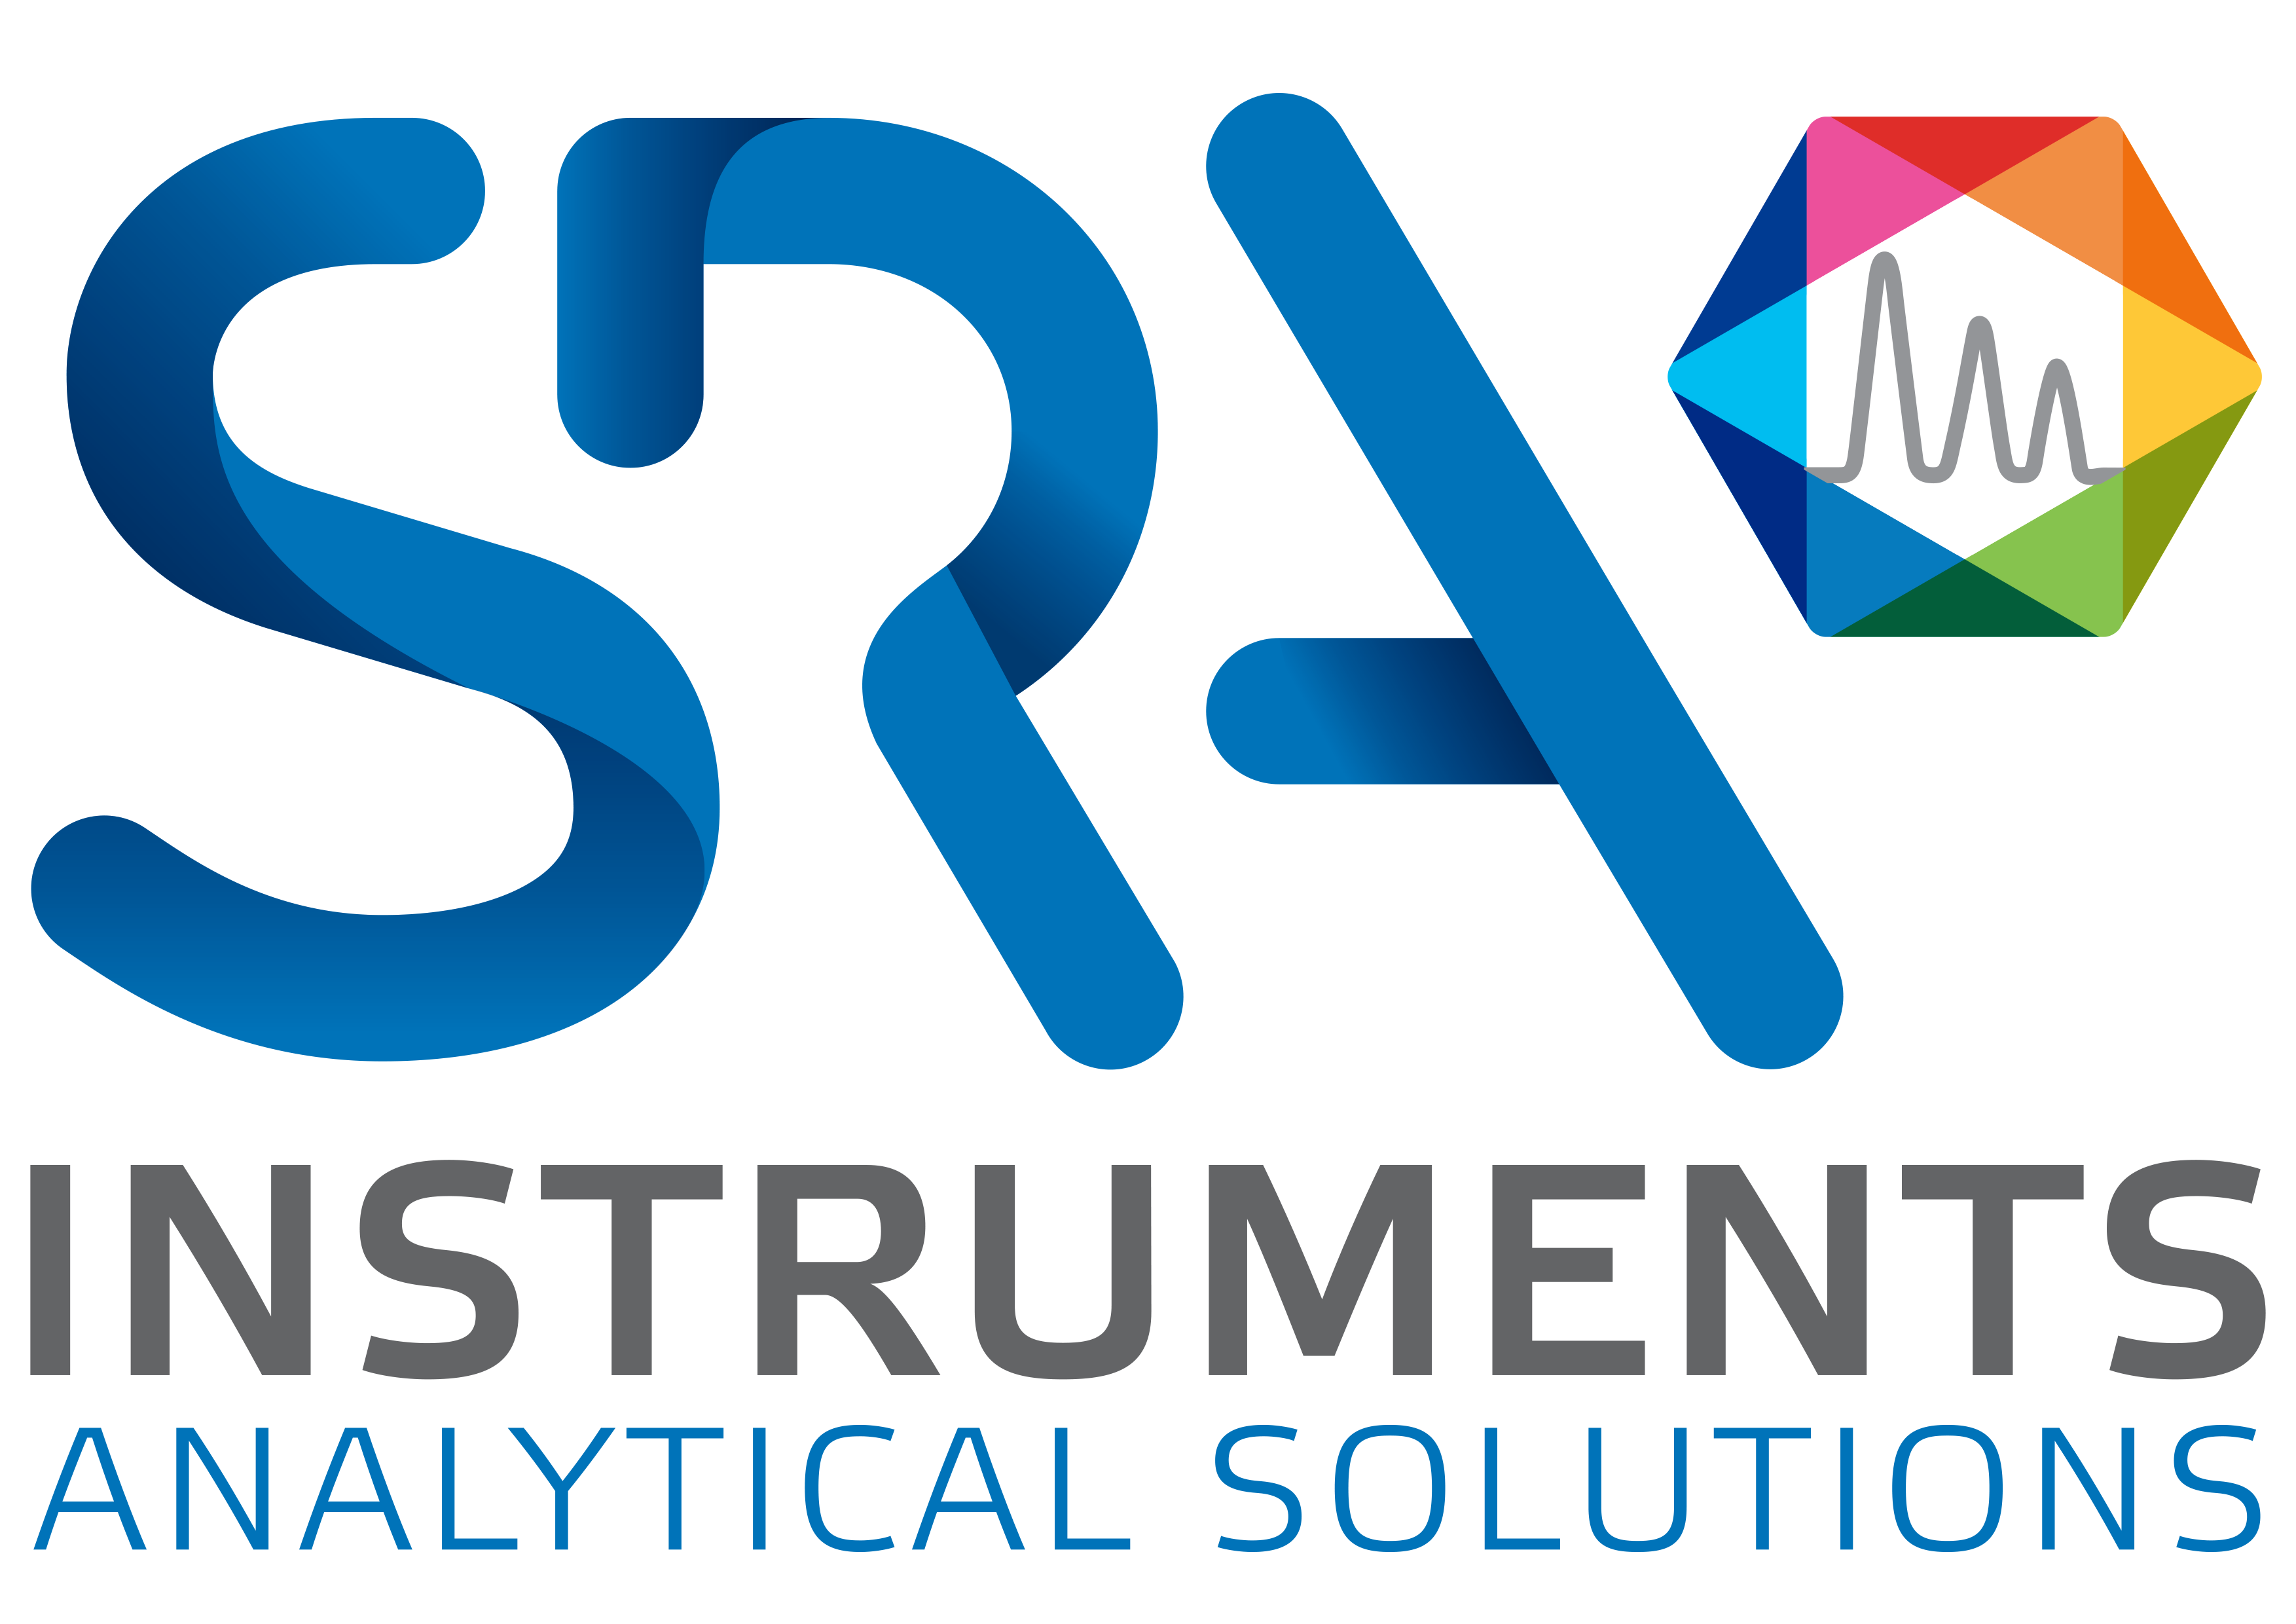 ✨ L'équipe SRA Instruments vous souhaite de joyeuses fêtes de fin d'année🎄✨ - SRA Instruments